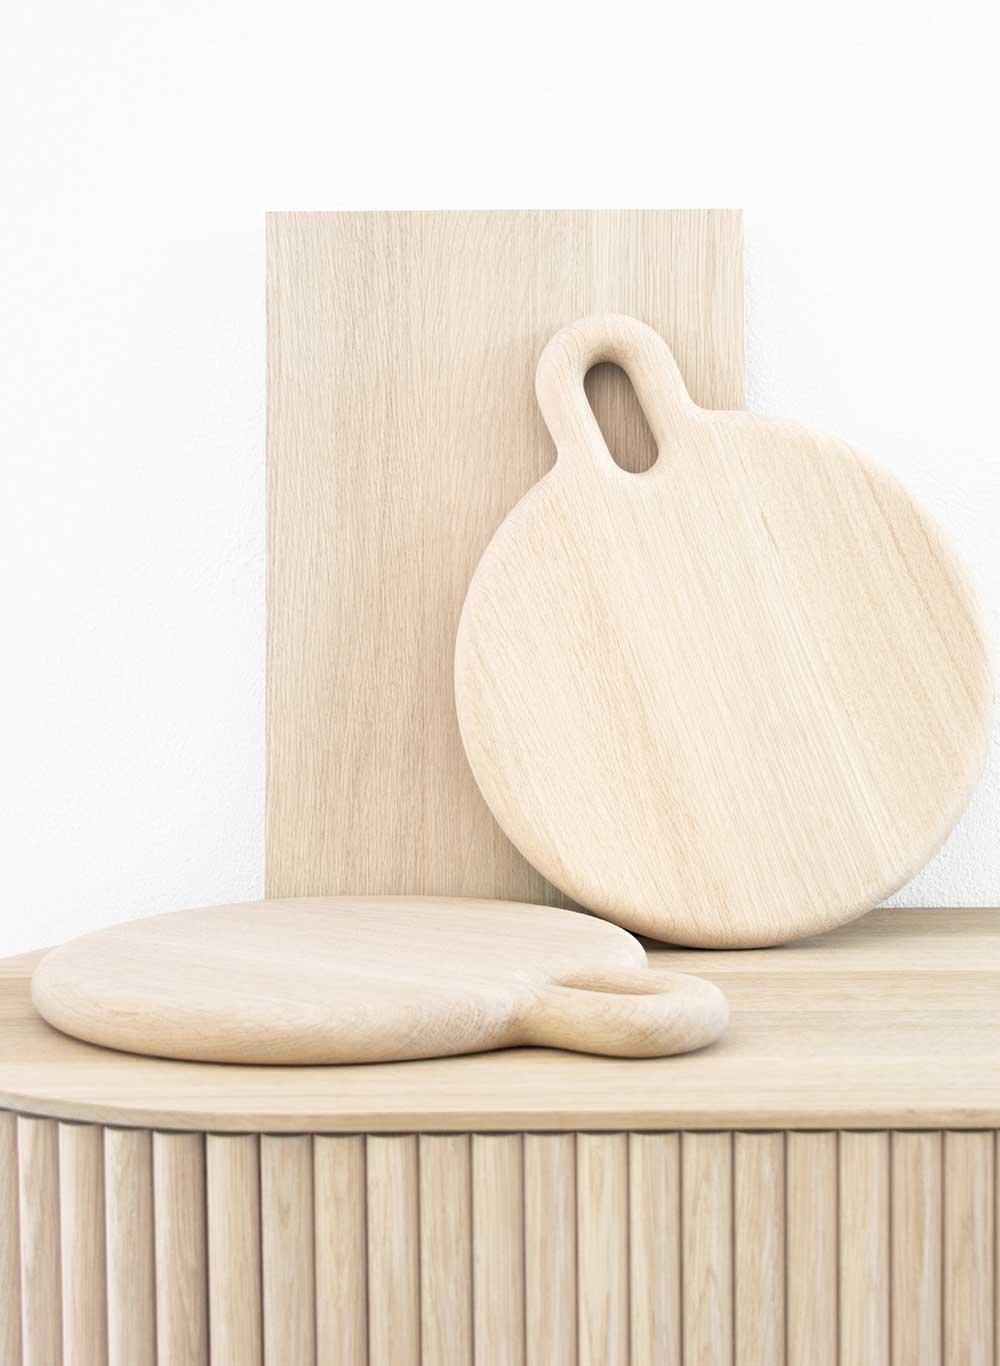 Fester Griff Nachhaltiges Massivholz aus Deutschland verwendet Nicolene van der Walt für ihre minimalistischen Objekte. nicolenevanderwalt.com